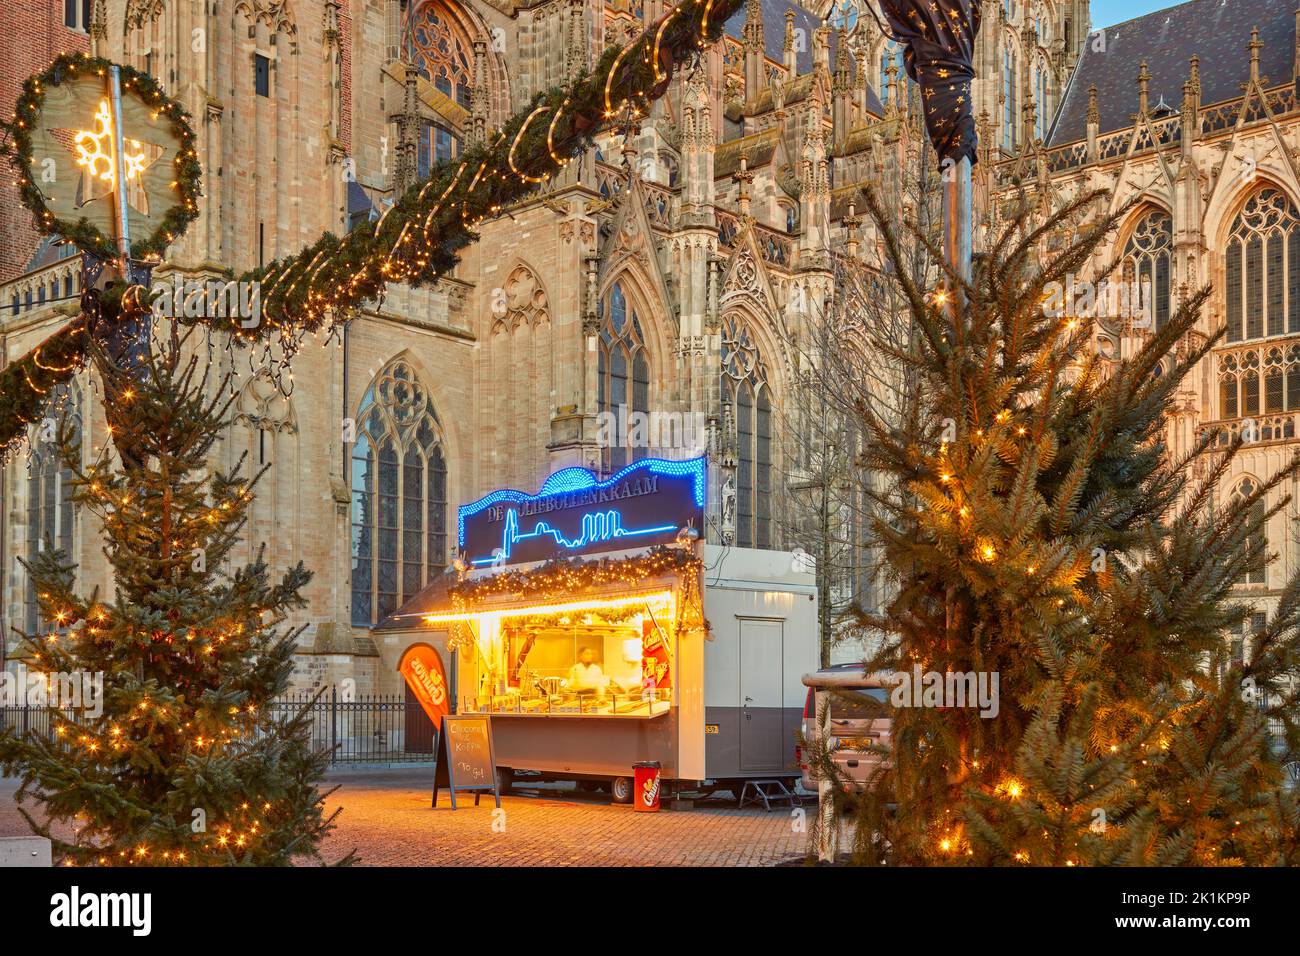 Den bosch, Países Bajos - 21 de diciembre de 2021: Stand de venta tradicional holandés 'oliebollen' (bolas de masa frita) en invierno en el centro de la ciudad de Foto de stock